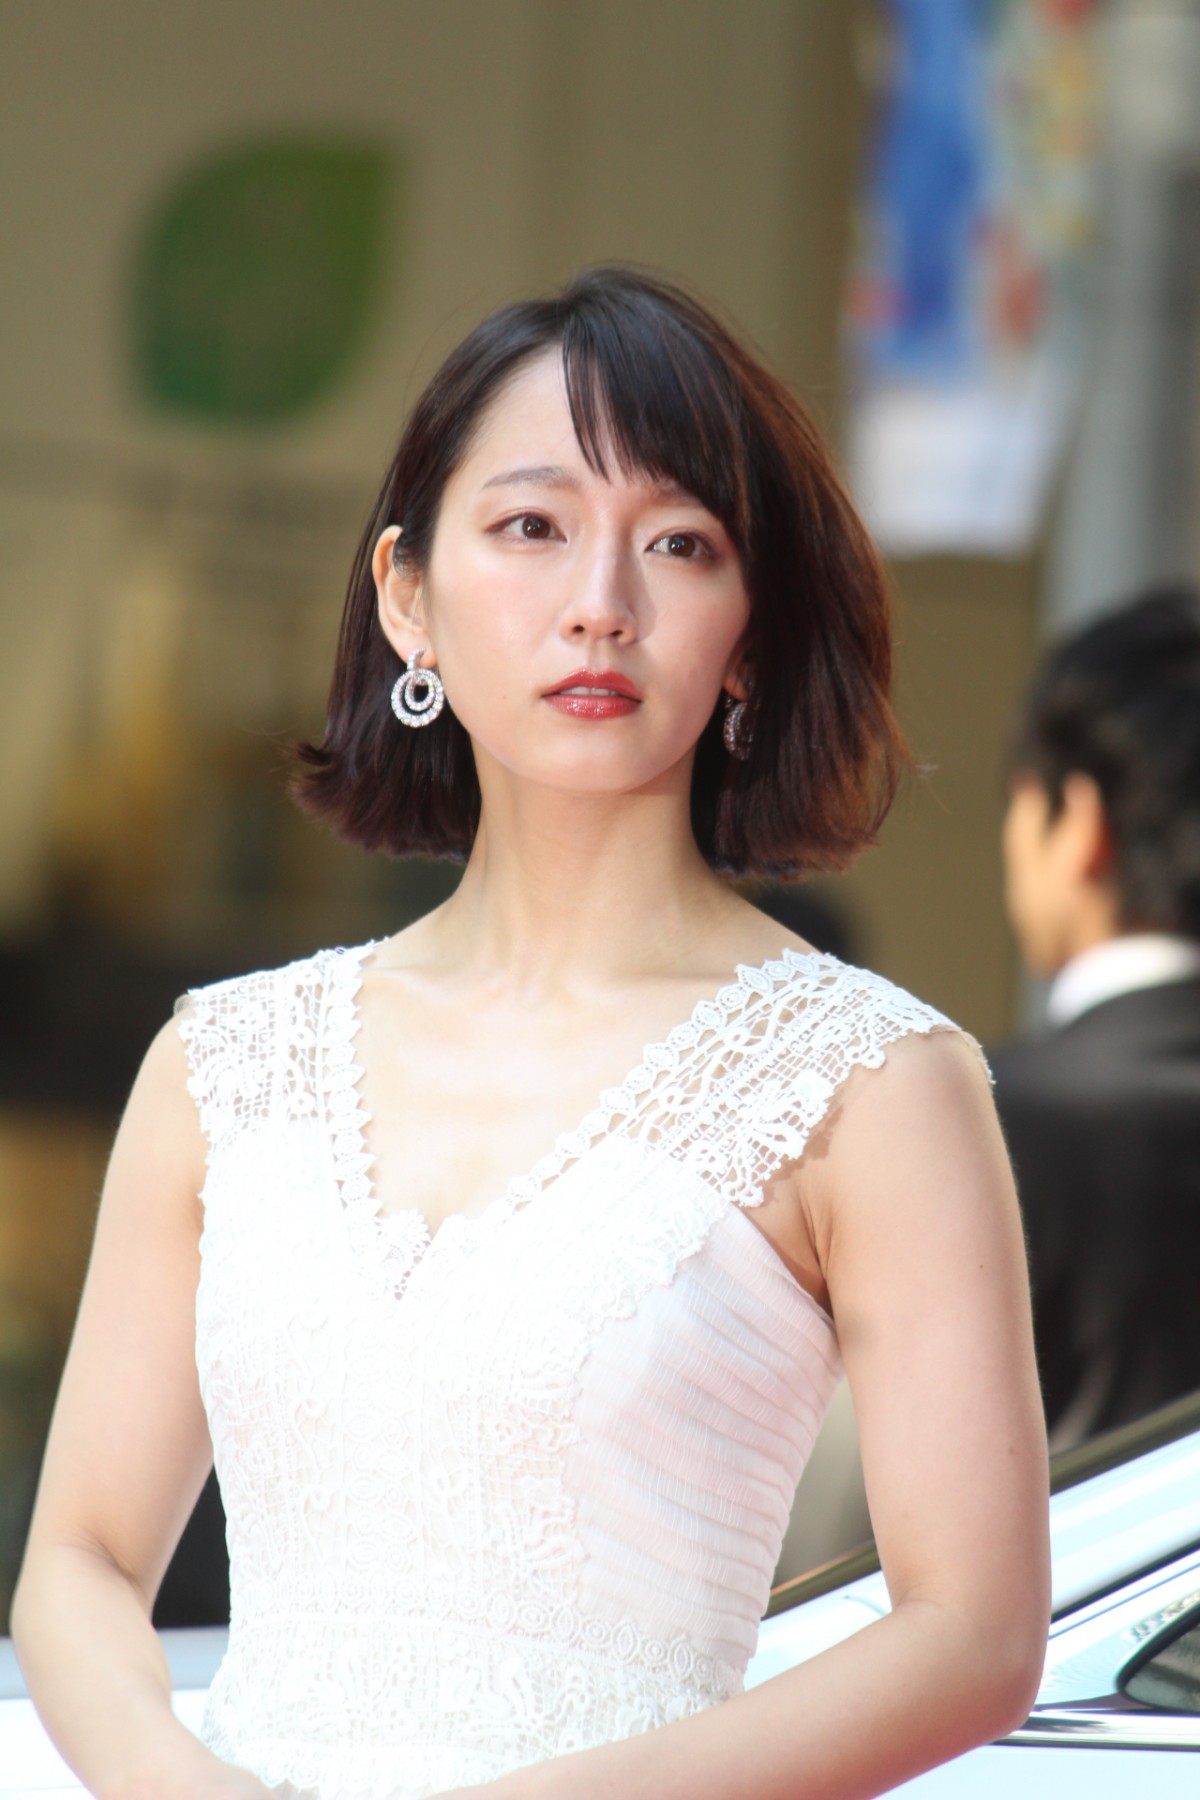 吉岡里帆、 2017年を代表する女性に選出 「リップ一色を悩む時間にも幸せ感じる」